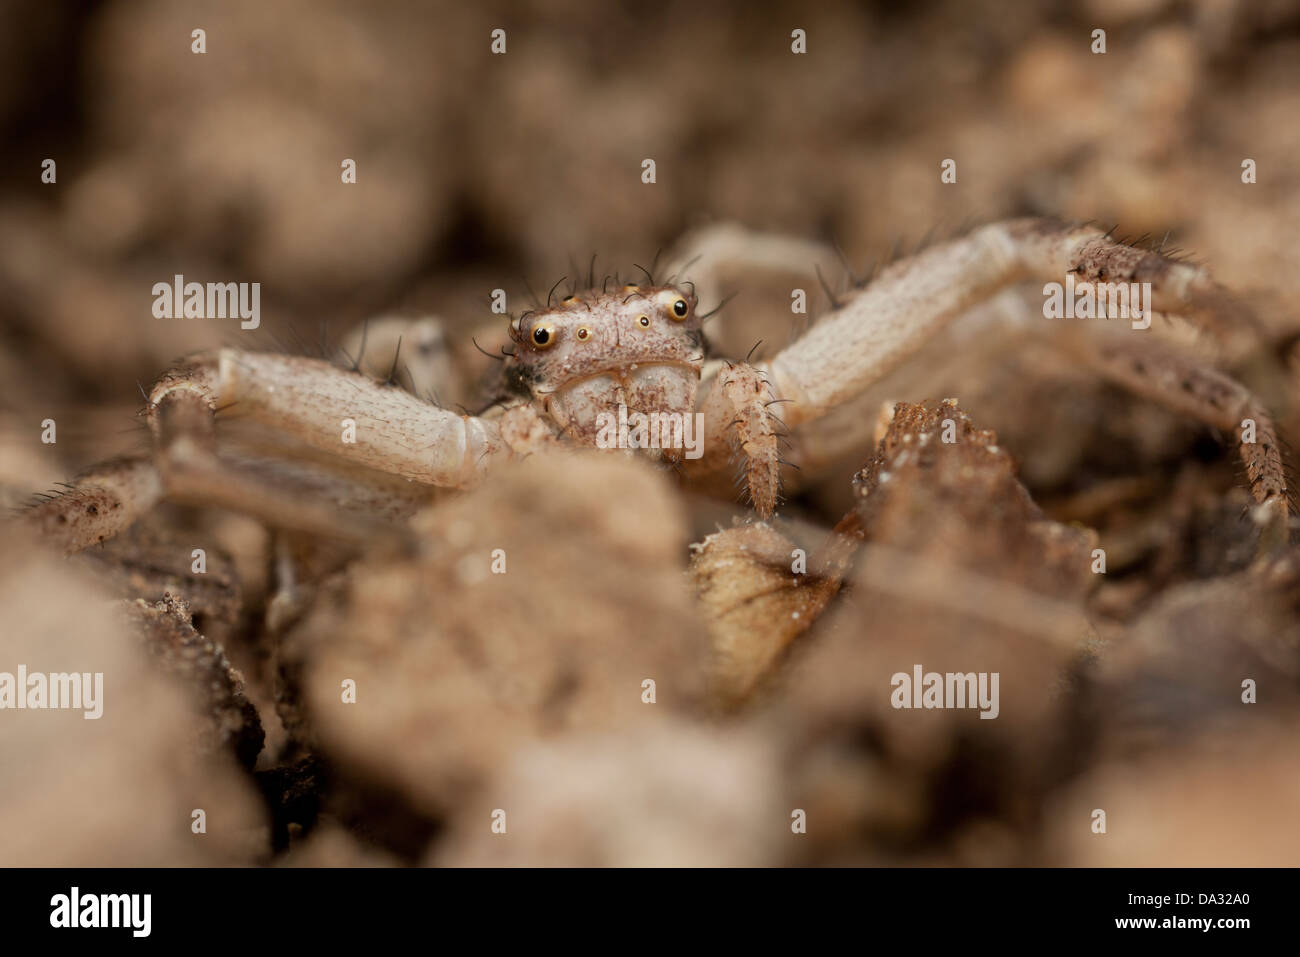 Une araignée crabe réside dans la terre dans un jardin Hampshire Angleterre Banque D'Images